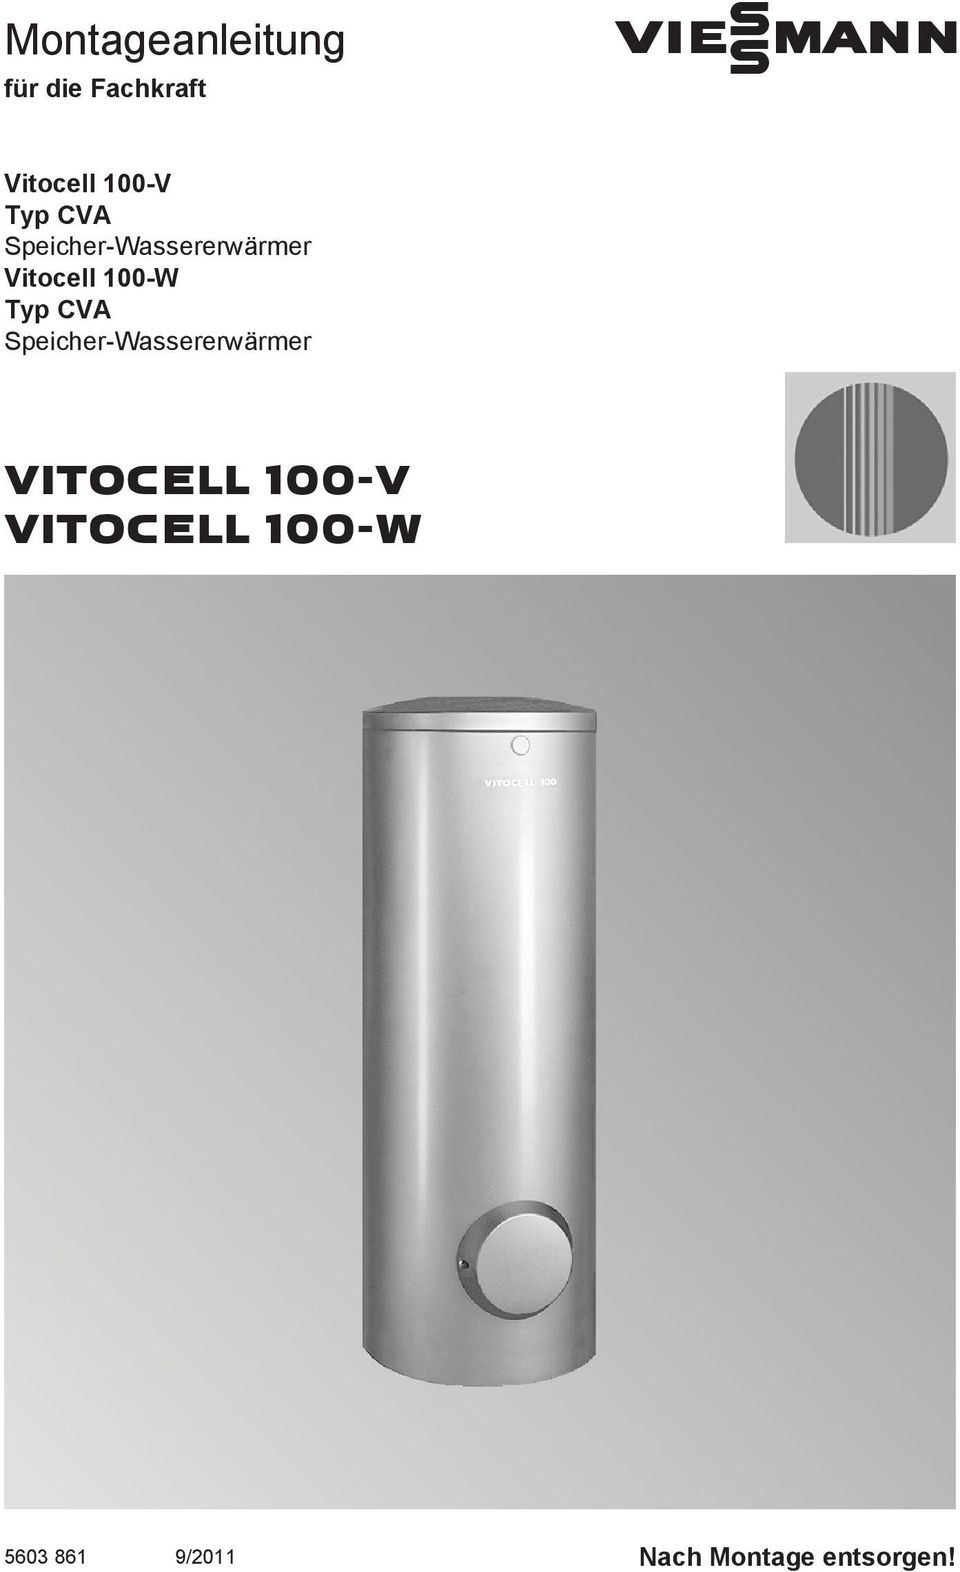 Vitocell 100-W Typ CVA Speicher-Wassererwärmer